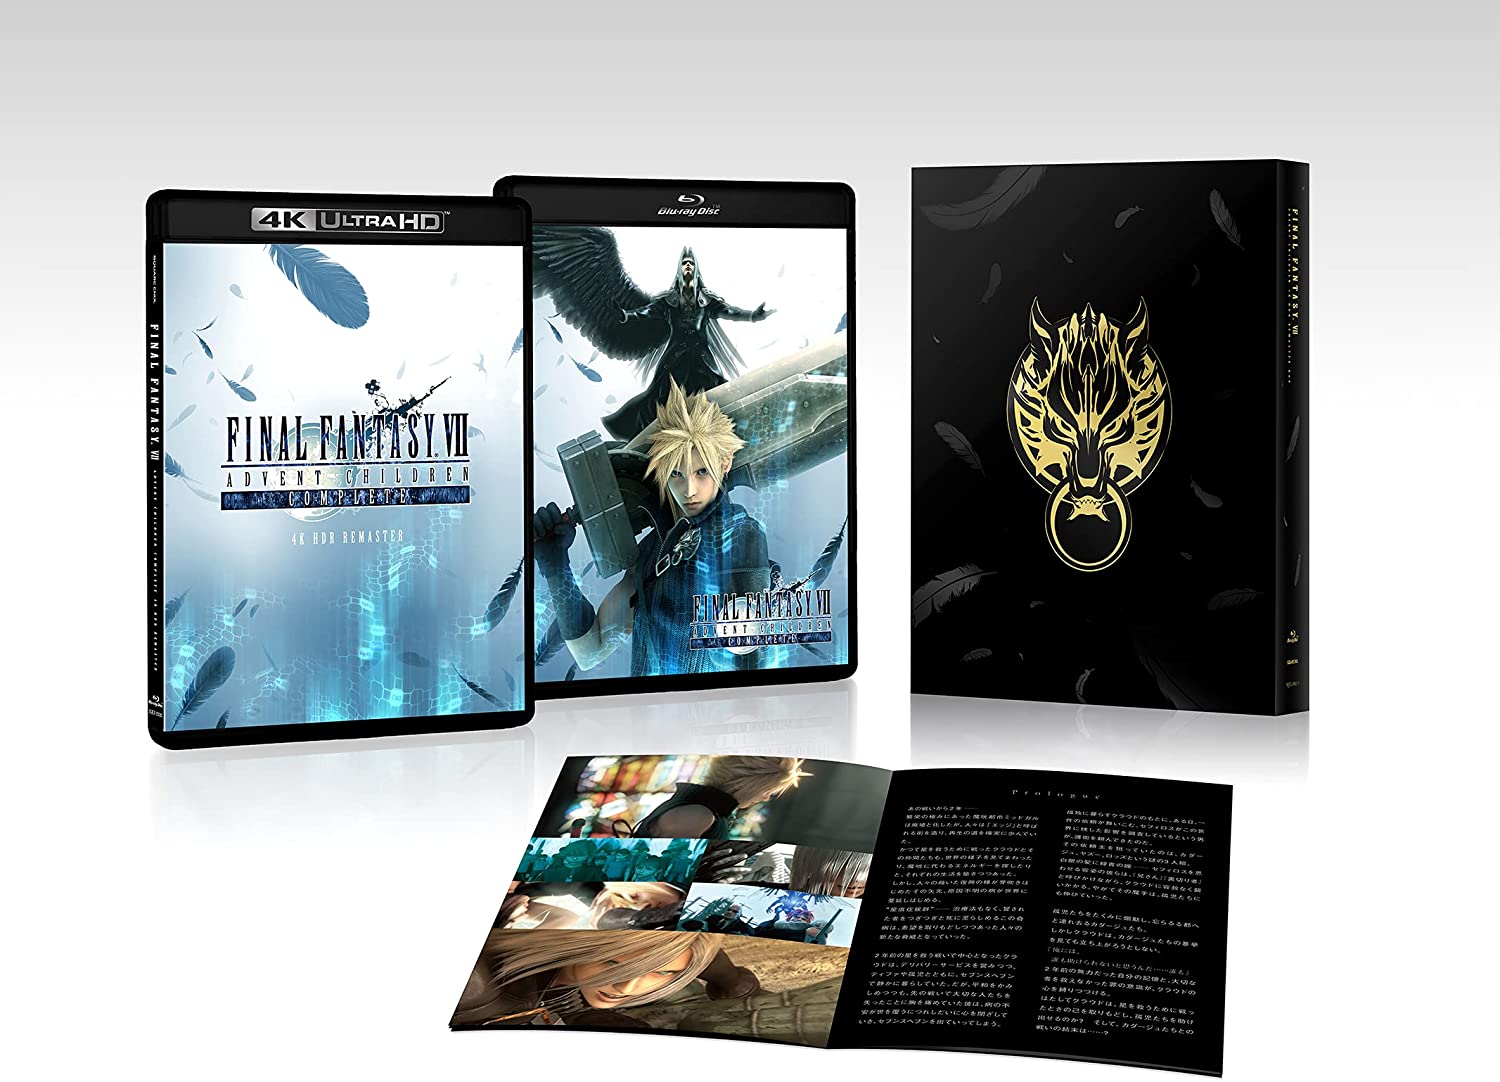 FINAL FANTASY VII ADVENT CHILDREN COMPLETE 4K Ultra HD キャンペーン スチールブック Final Fantasy VII Remake Intergrade steelbook